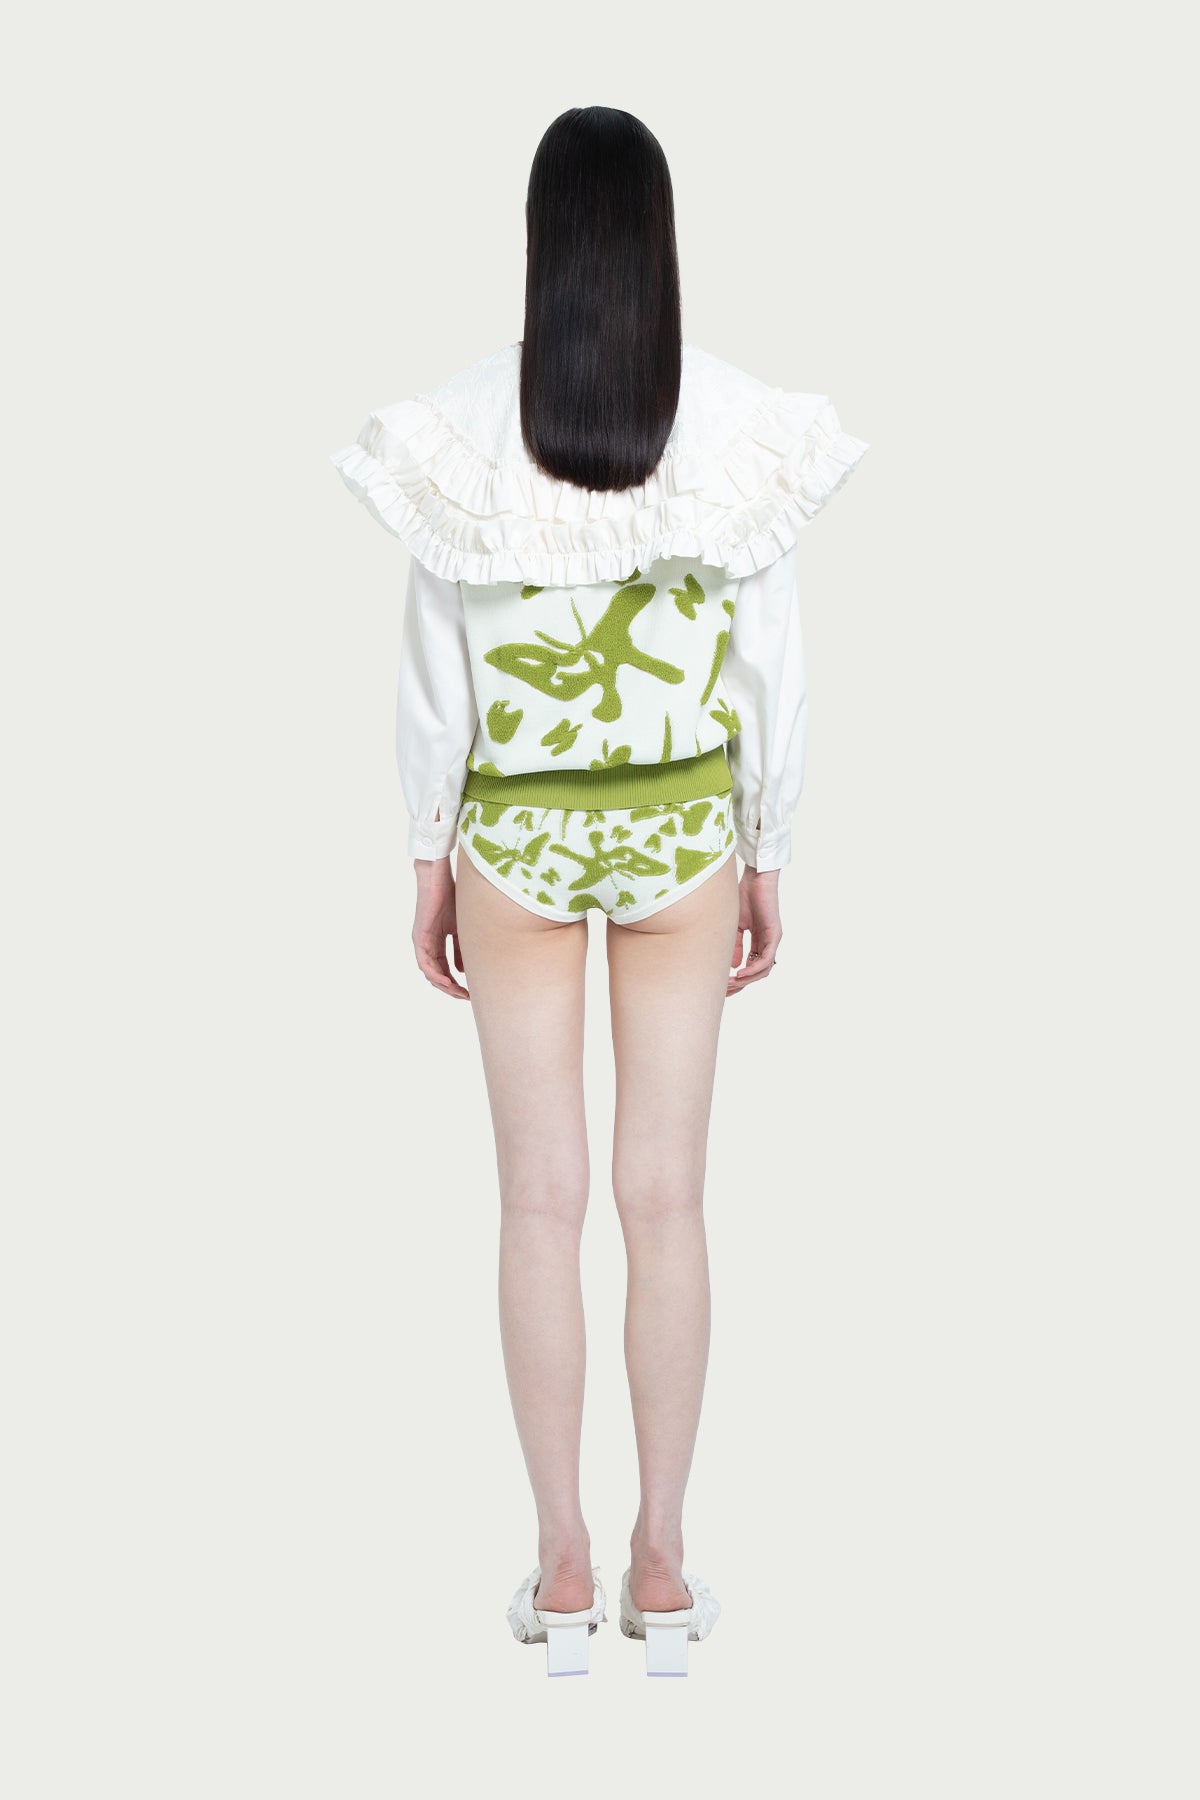 ZI II CI IEN | Lotus Embroidery Ruffle Shirt